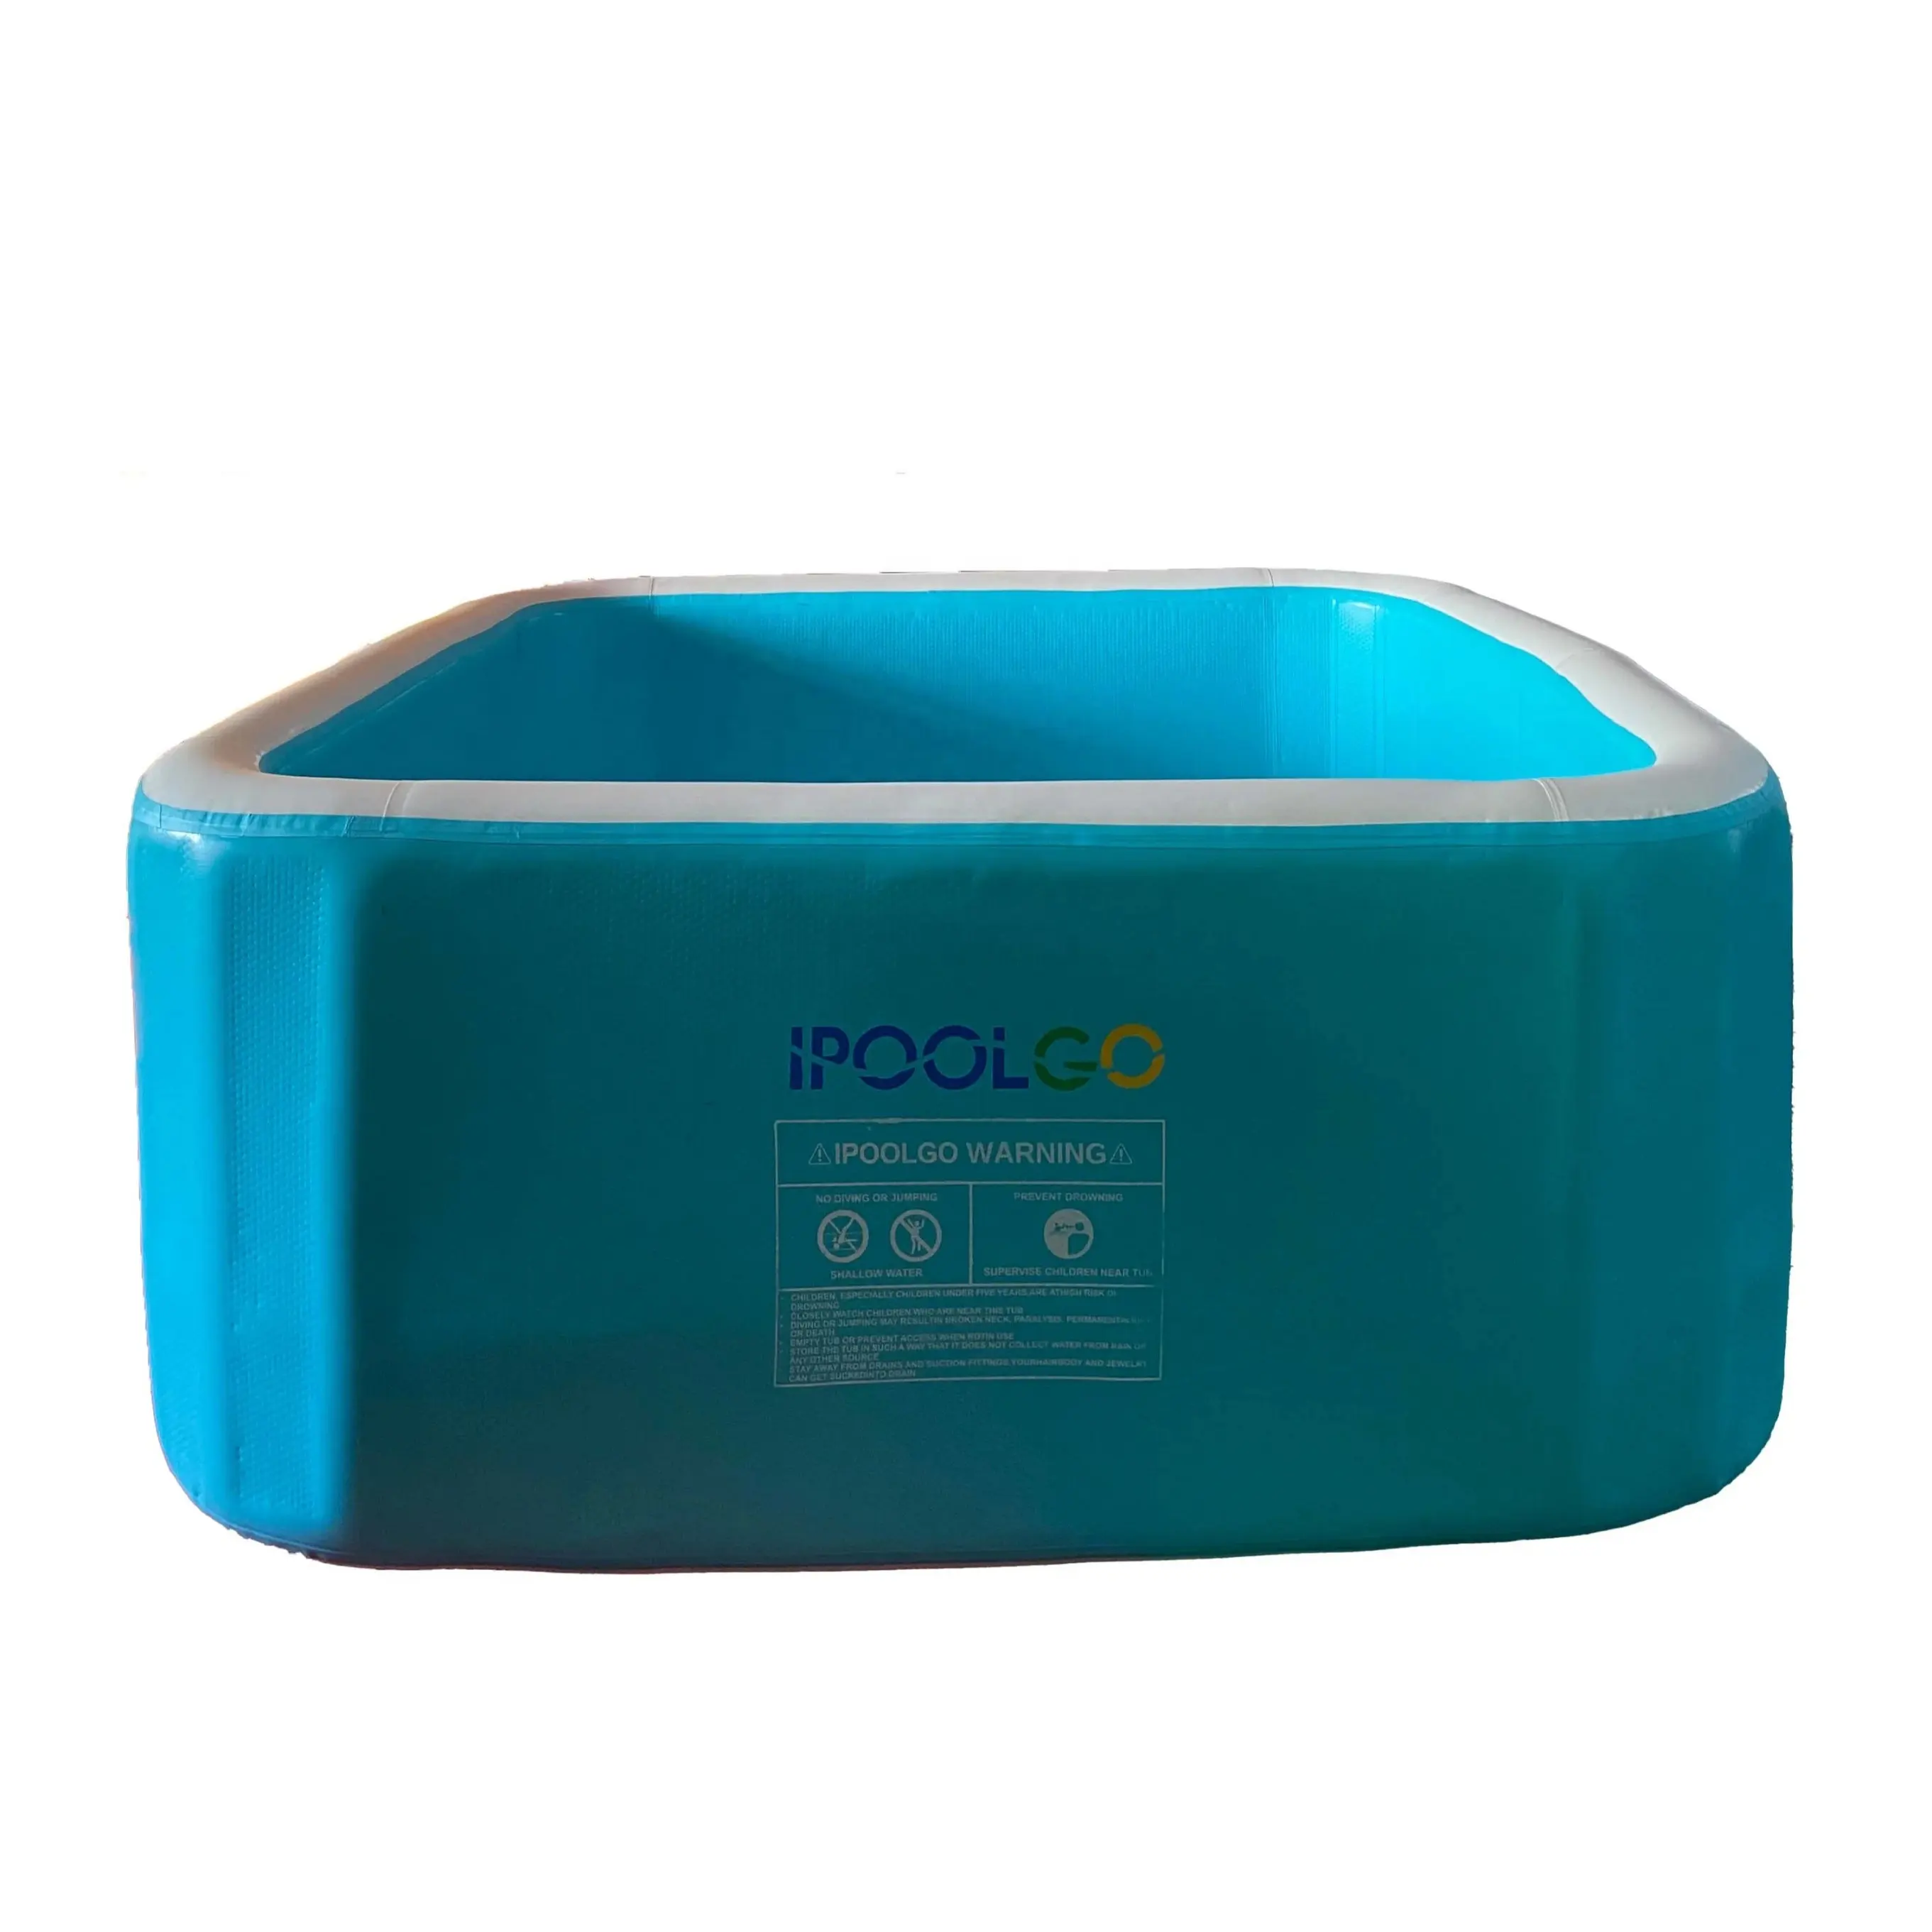 Ipoolgo מתנפחים בריכת משאב ספריית מפעל עבור בריכות שחייה איכותיות פרטיות